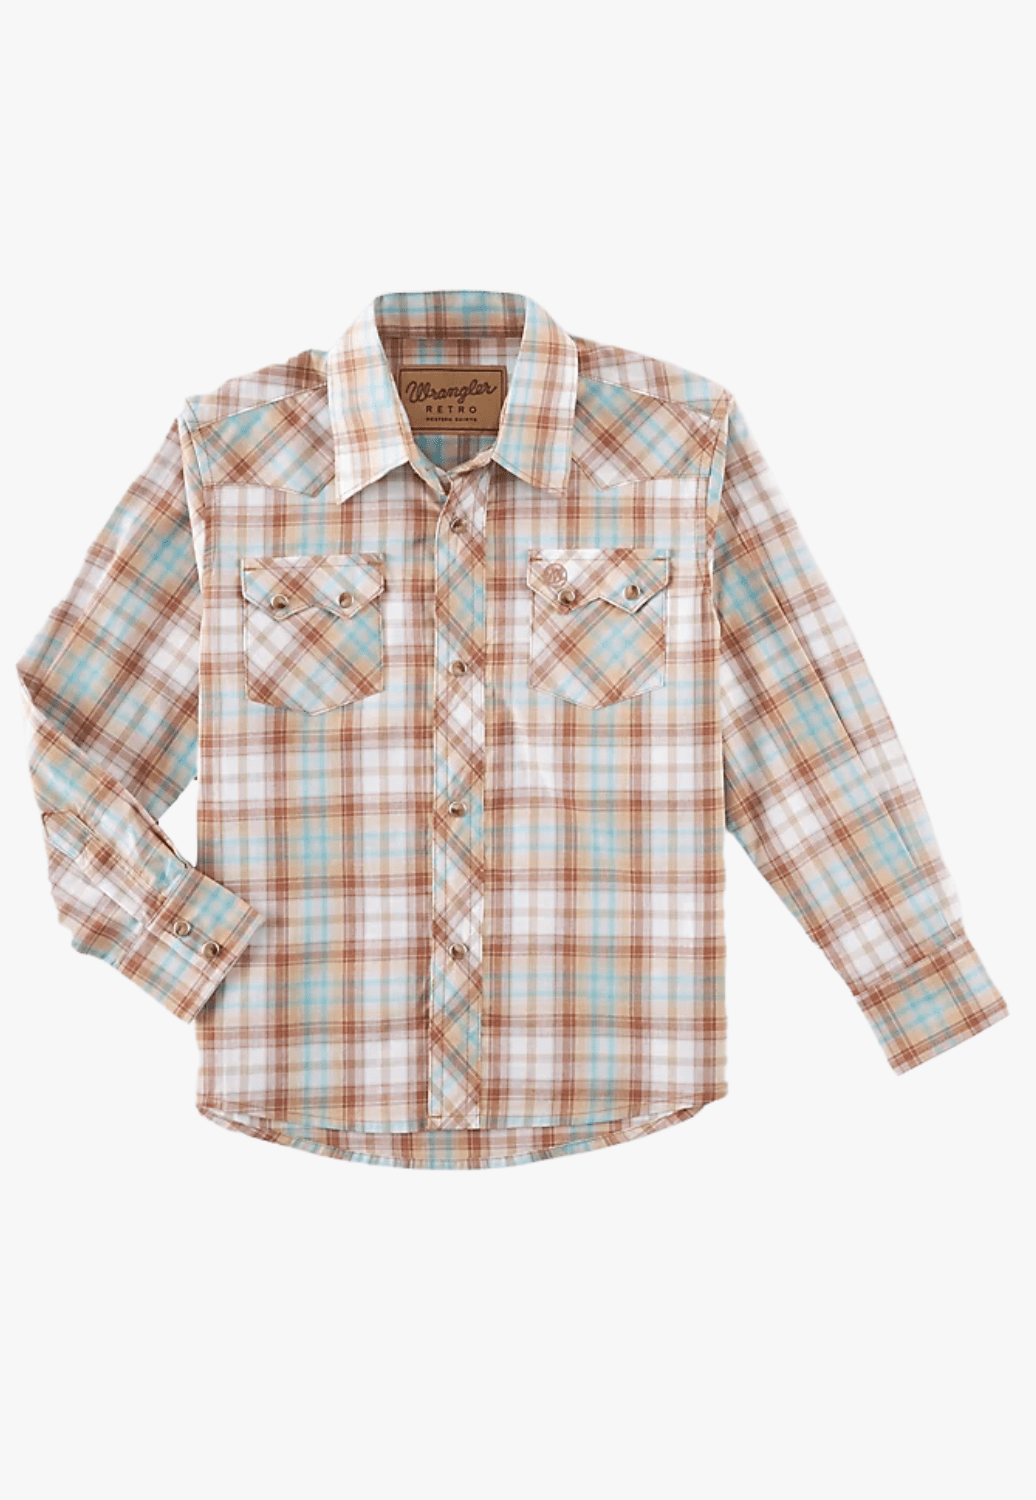 Wrangler CLOTHING-Boys Long Sleeve Shirts Wrangler Boys Retro Plaid Long Sleeve Shirt